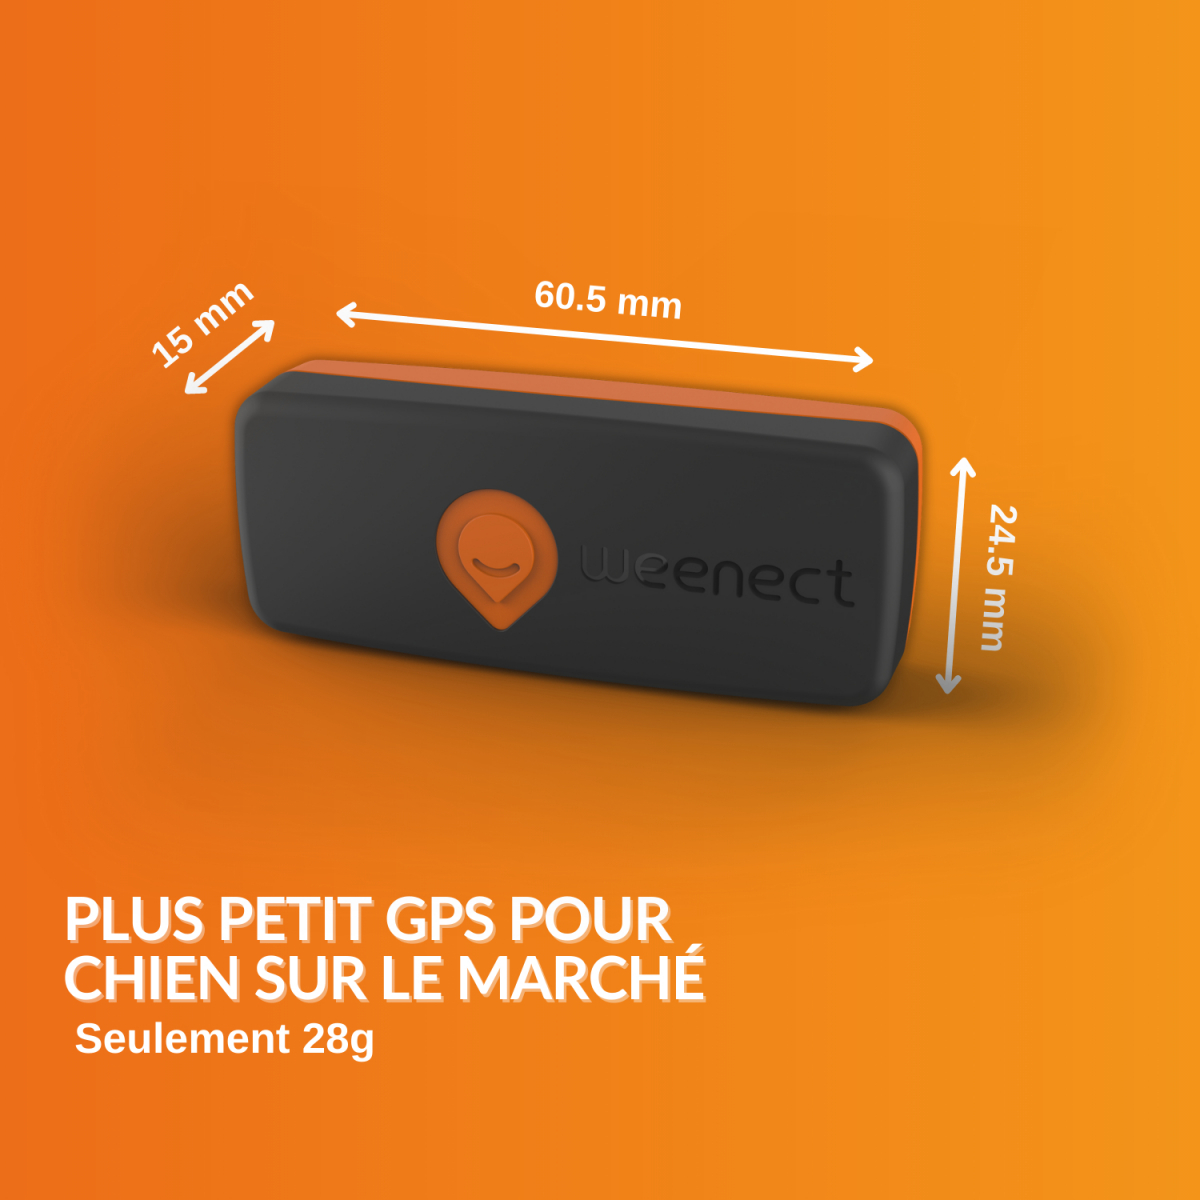 Se acaba de presentar el localizador GPS Weenect XS, que sólo pesa 27  gramos -  News